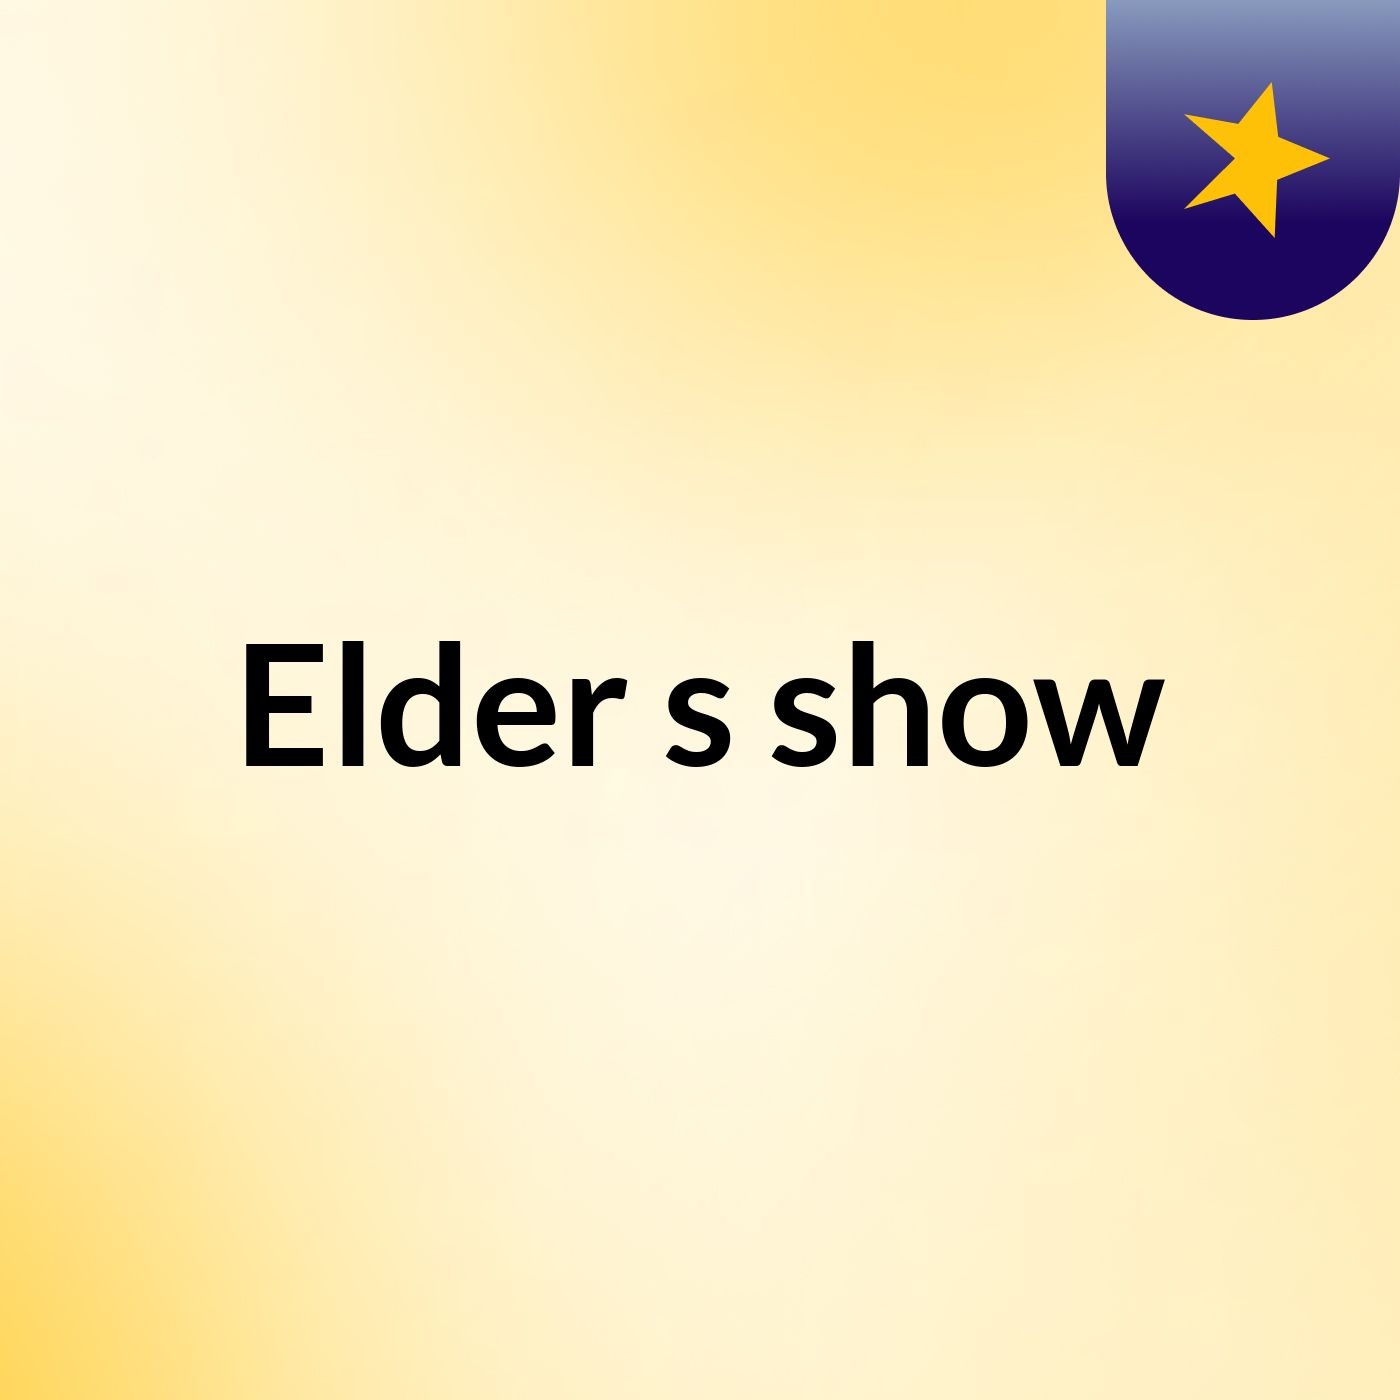 Elder's show